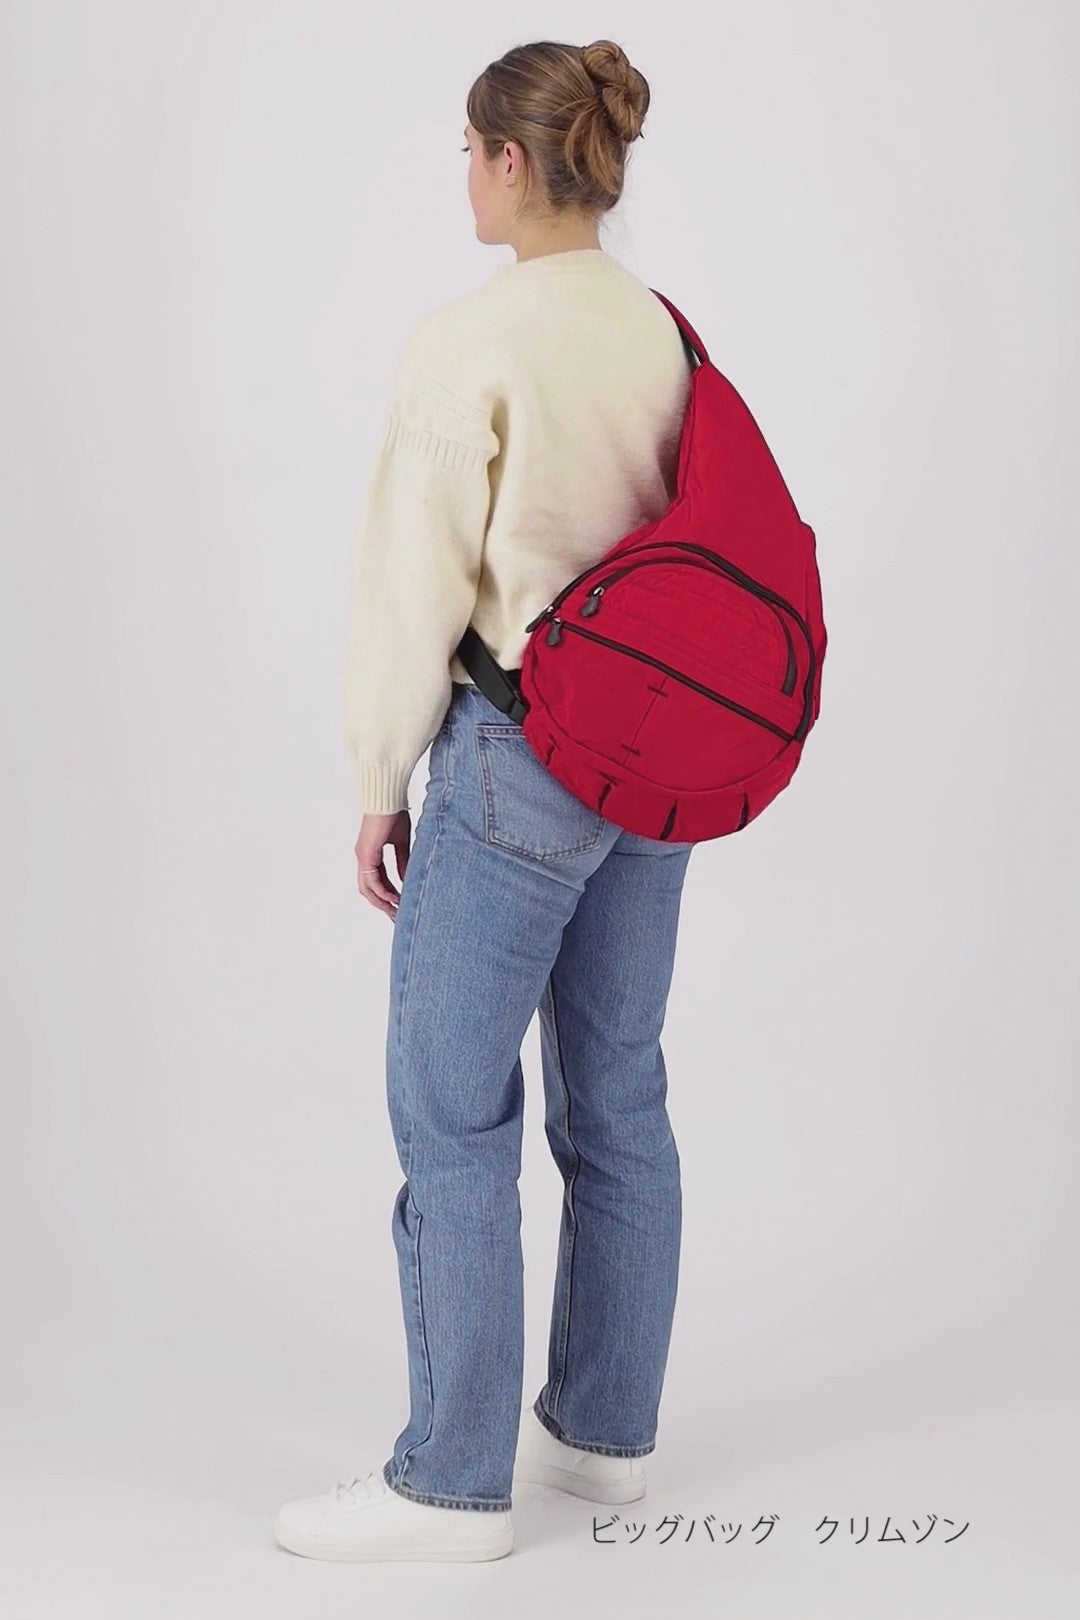 【色: ピスタチオ】Healthy Back Bag バッグ ビッグバッグ 44バッグ